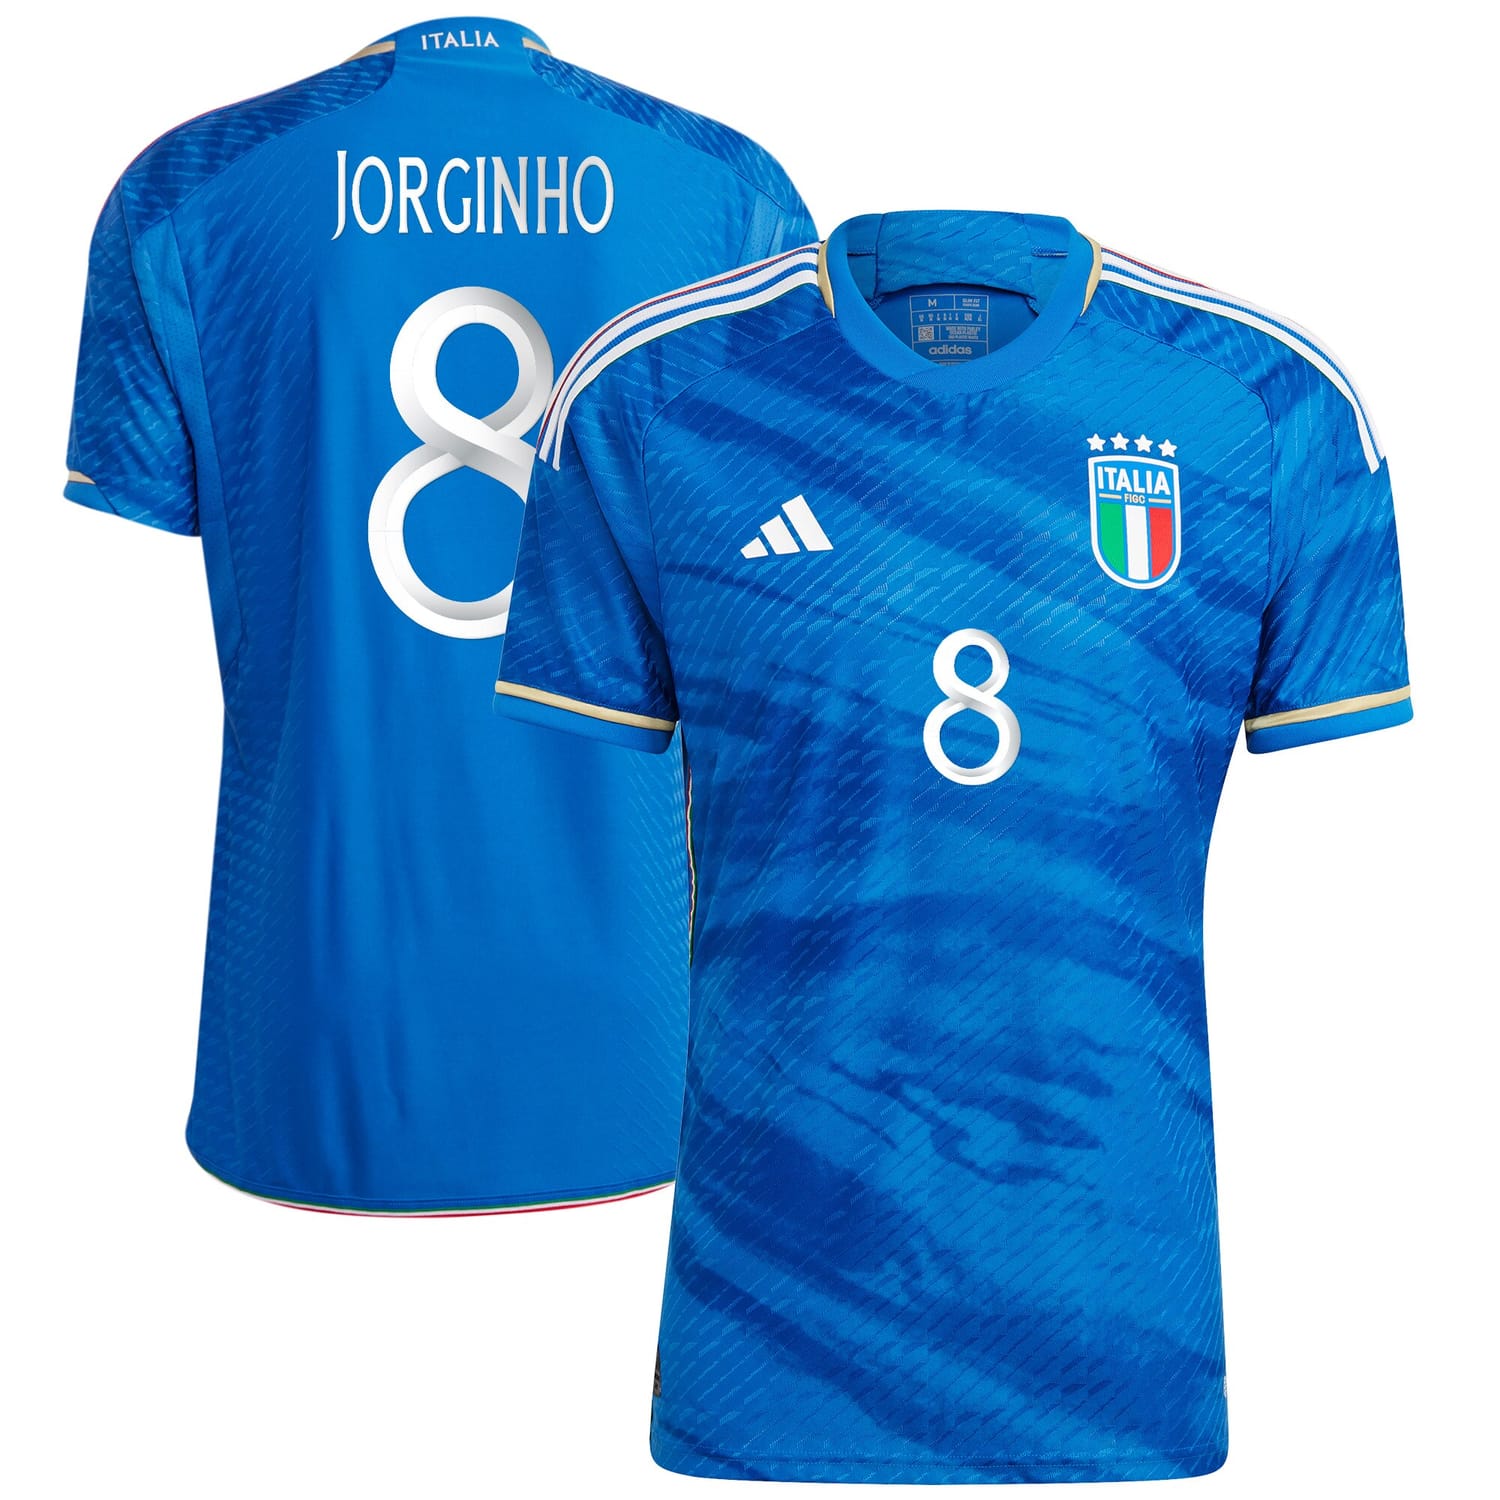 Italy National Team Home Authentic Jersey Shirt Blue 2023 player Jorginho printing for Men